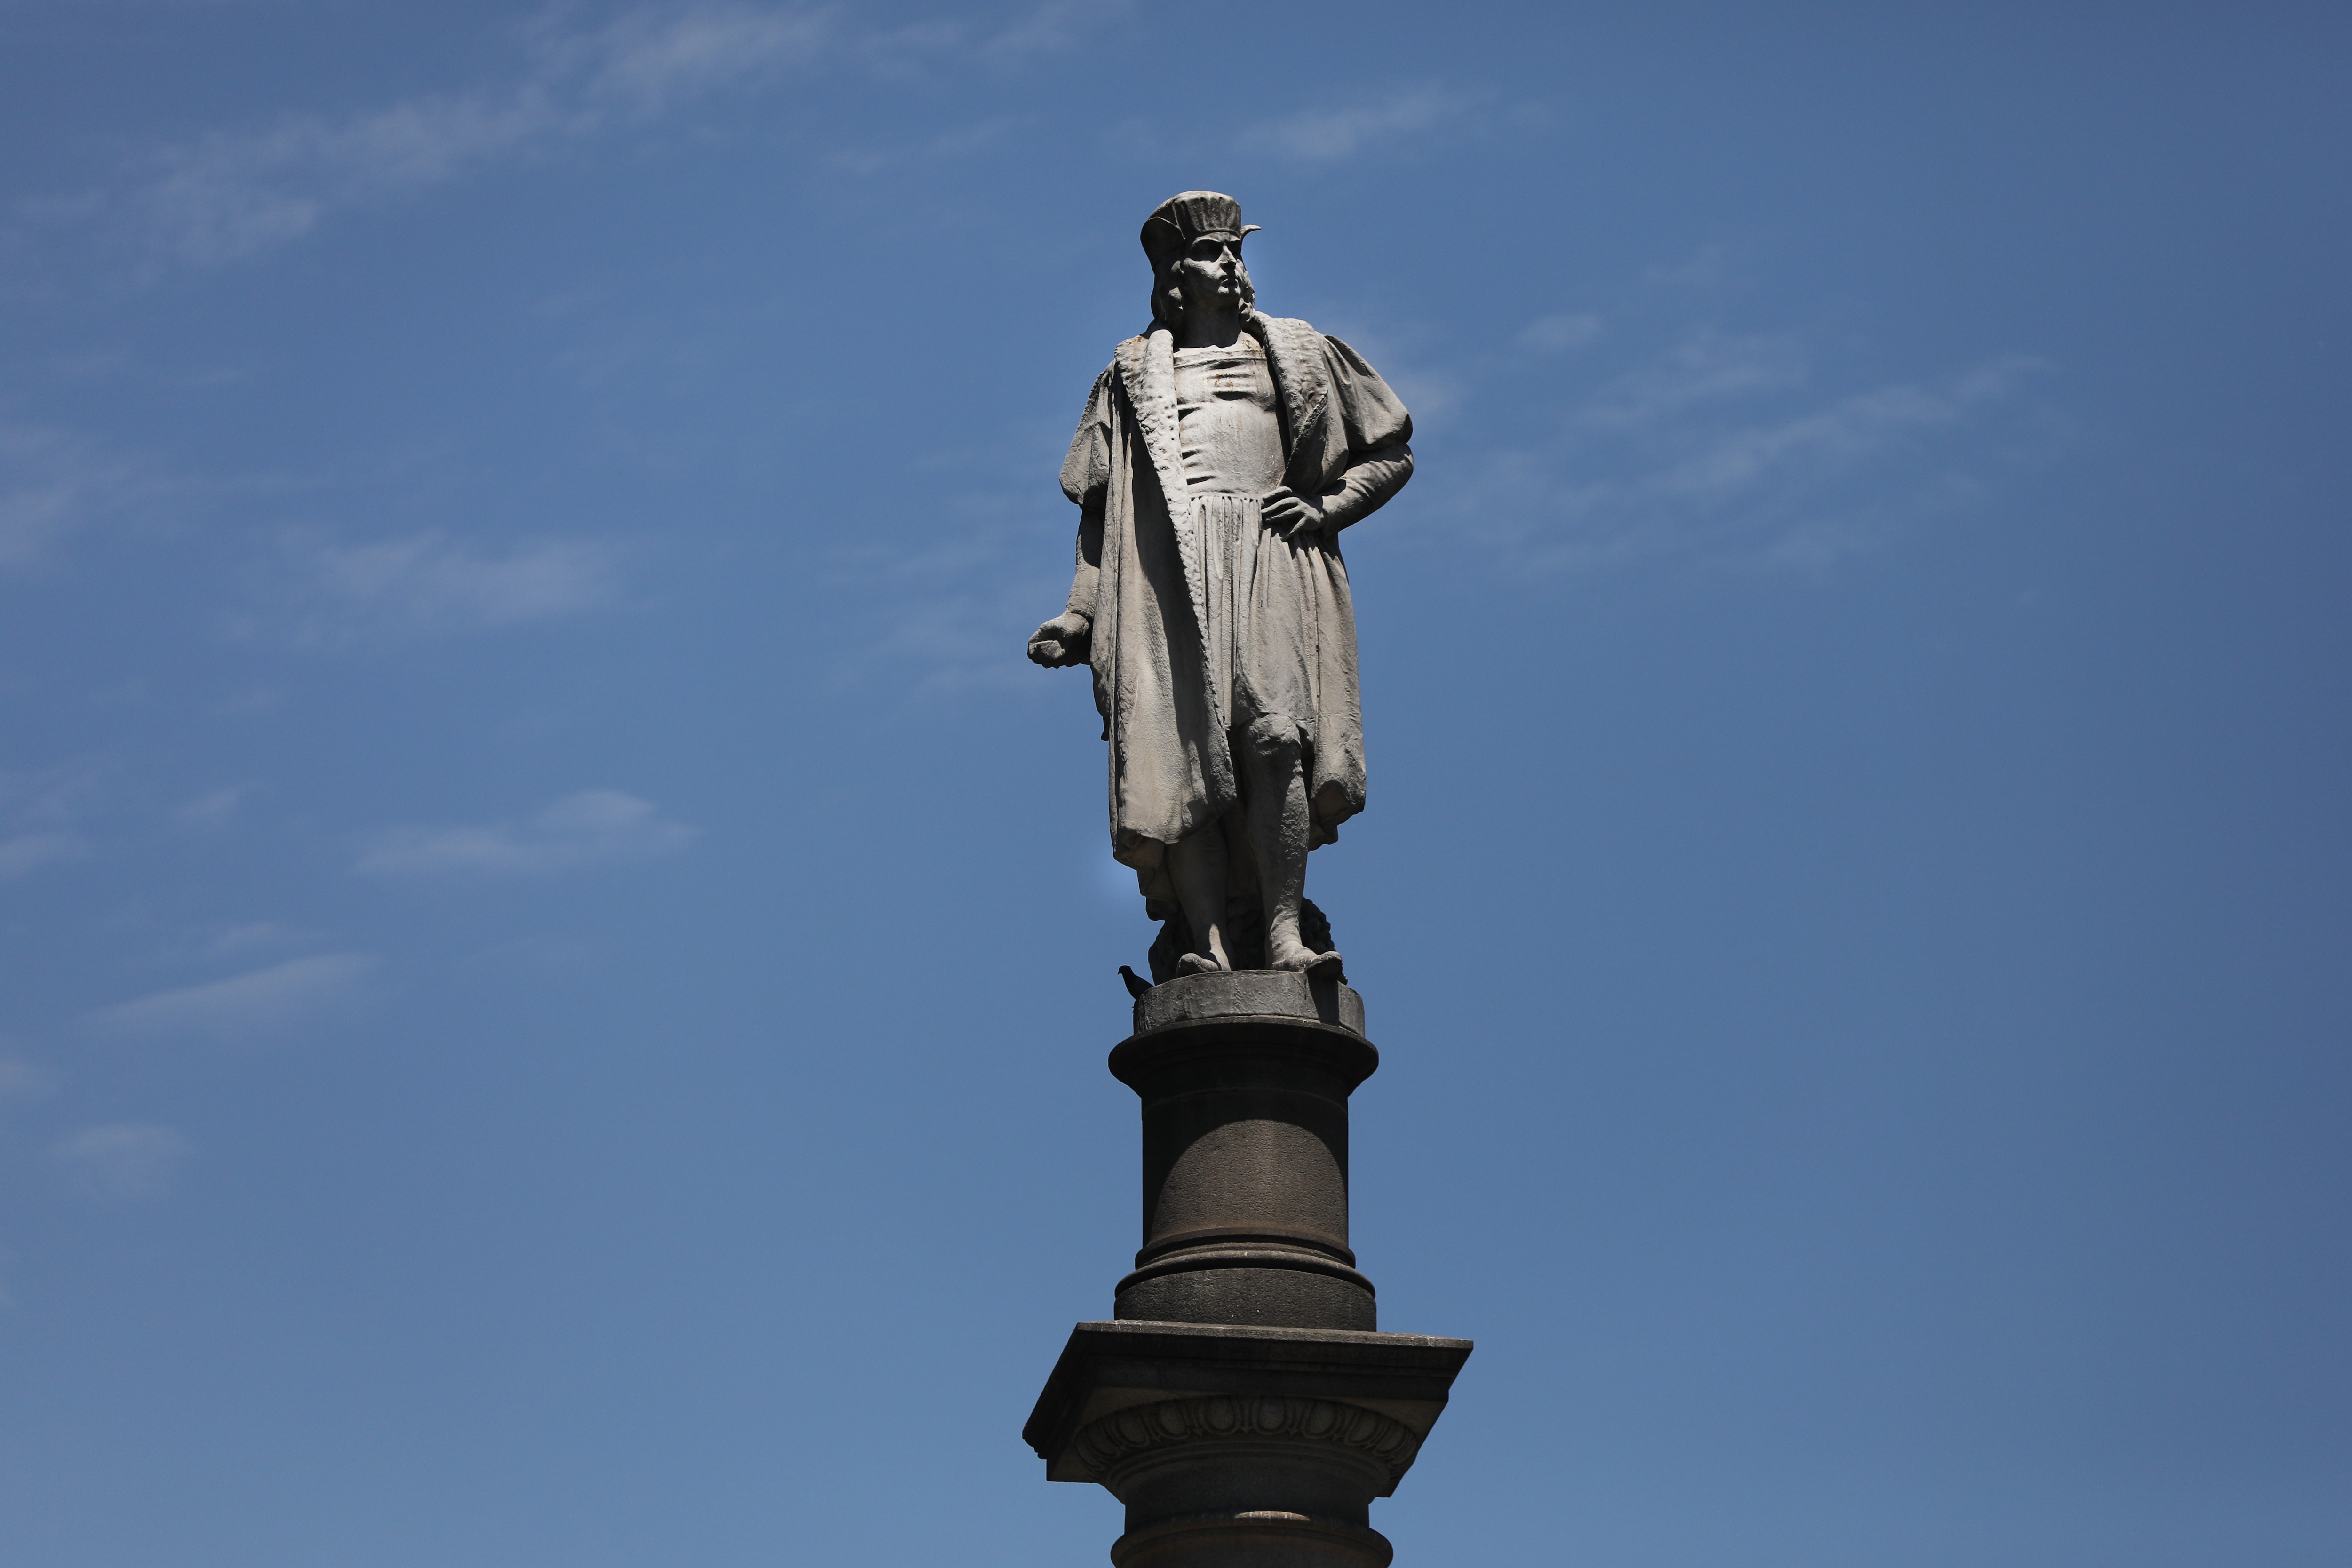 La statua di Cristoforo Colombo che si trova a Columbus Circle a New York. Sono innumerevoli le statue in giro per il mondo dedicate all'esploratore italiano